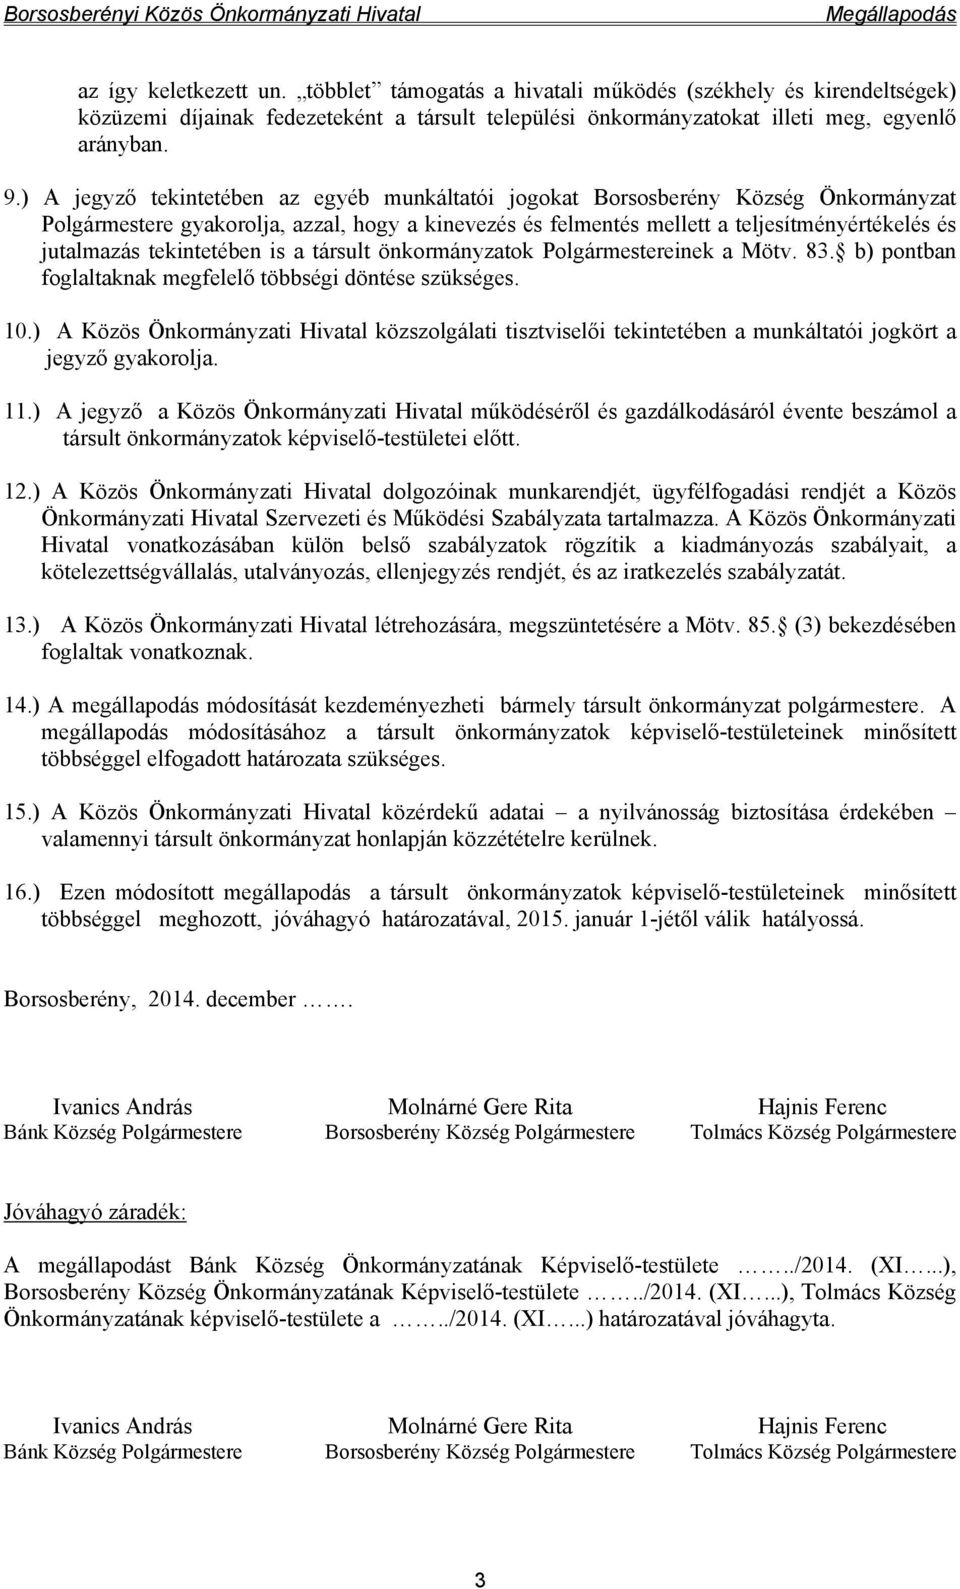 ) A jegyző tekintetében az egyéb munkáltatói jogokat Borsosberény Község Önkormányzat Polgármestere gyakorolja, azzal, hogy a kinevezés és felmentés mellett a teljesítményértékelés és jutalmazás